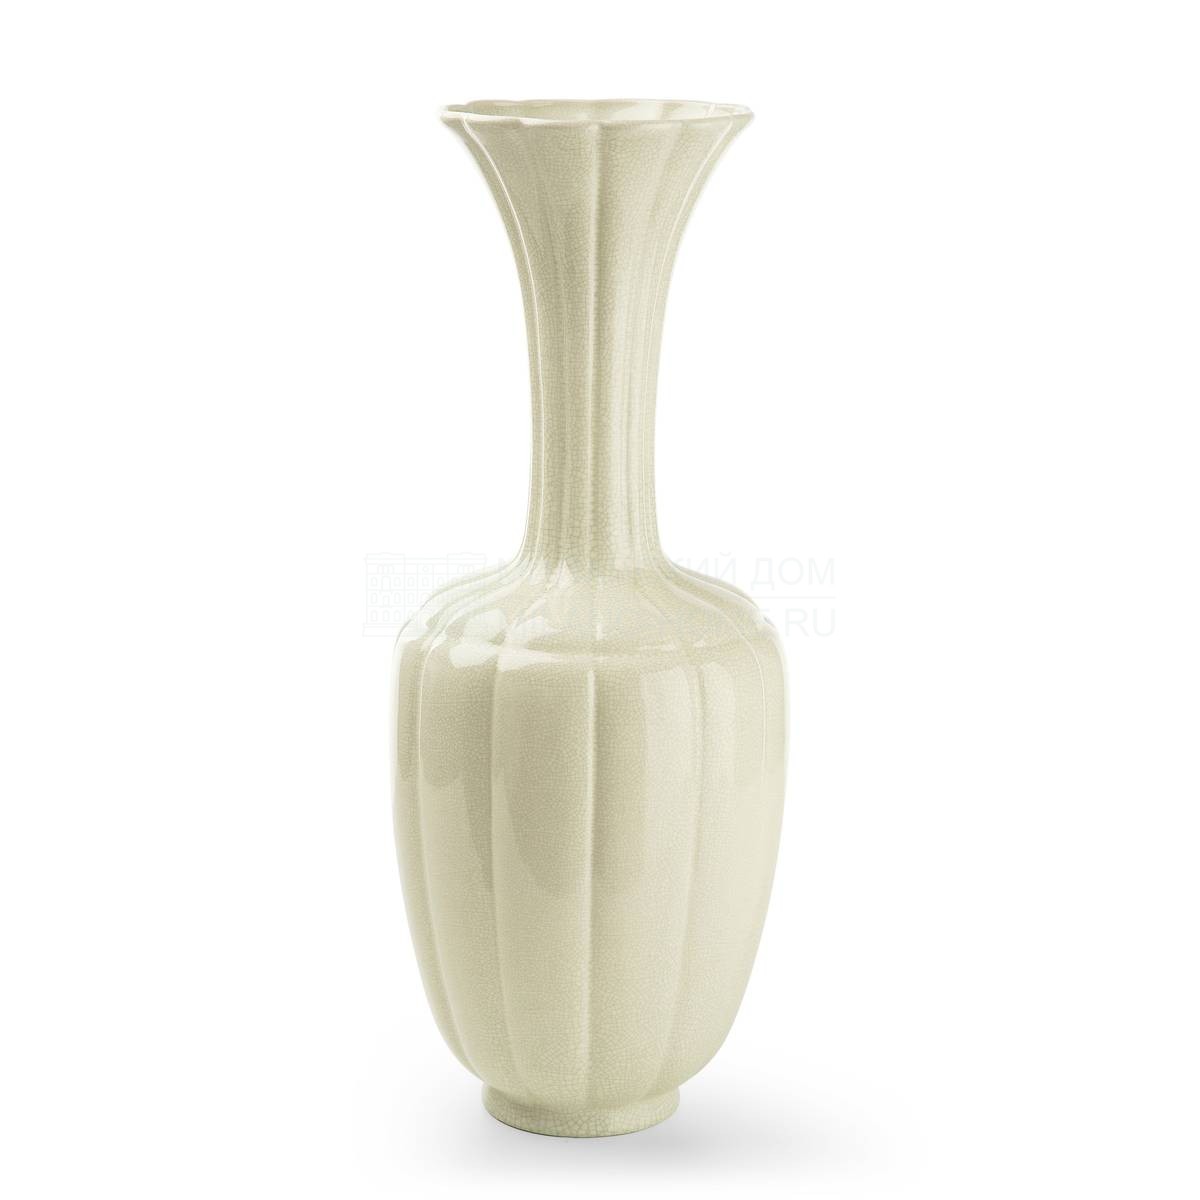 Ваза Dong vase из Италии фабрики MARIONI